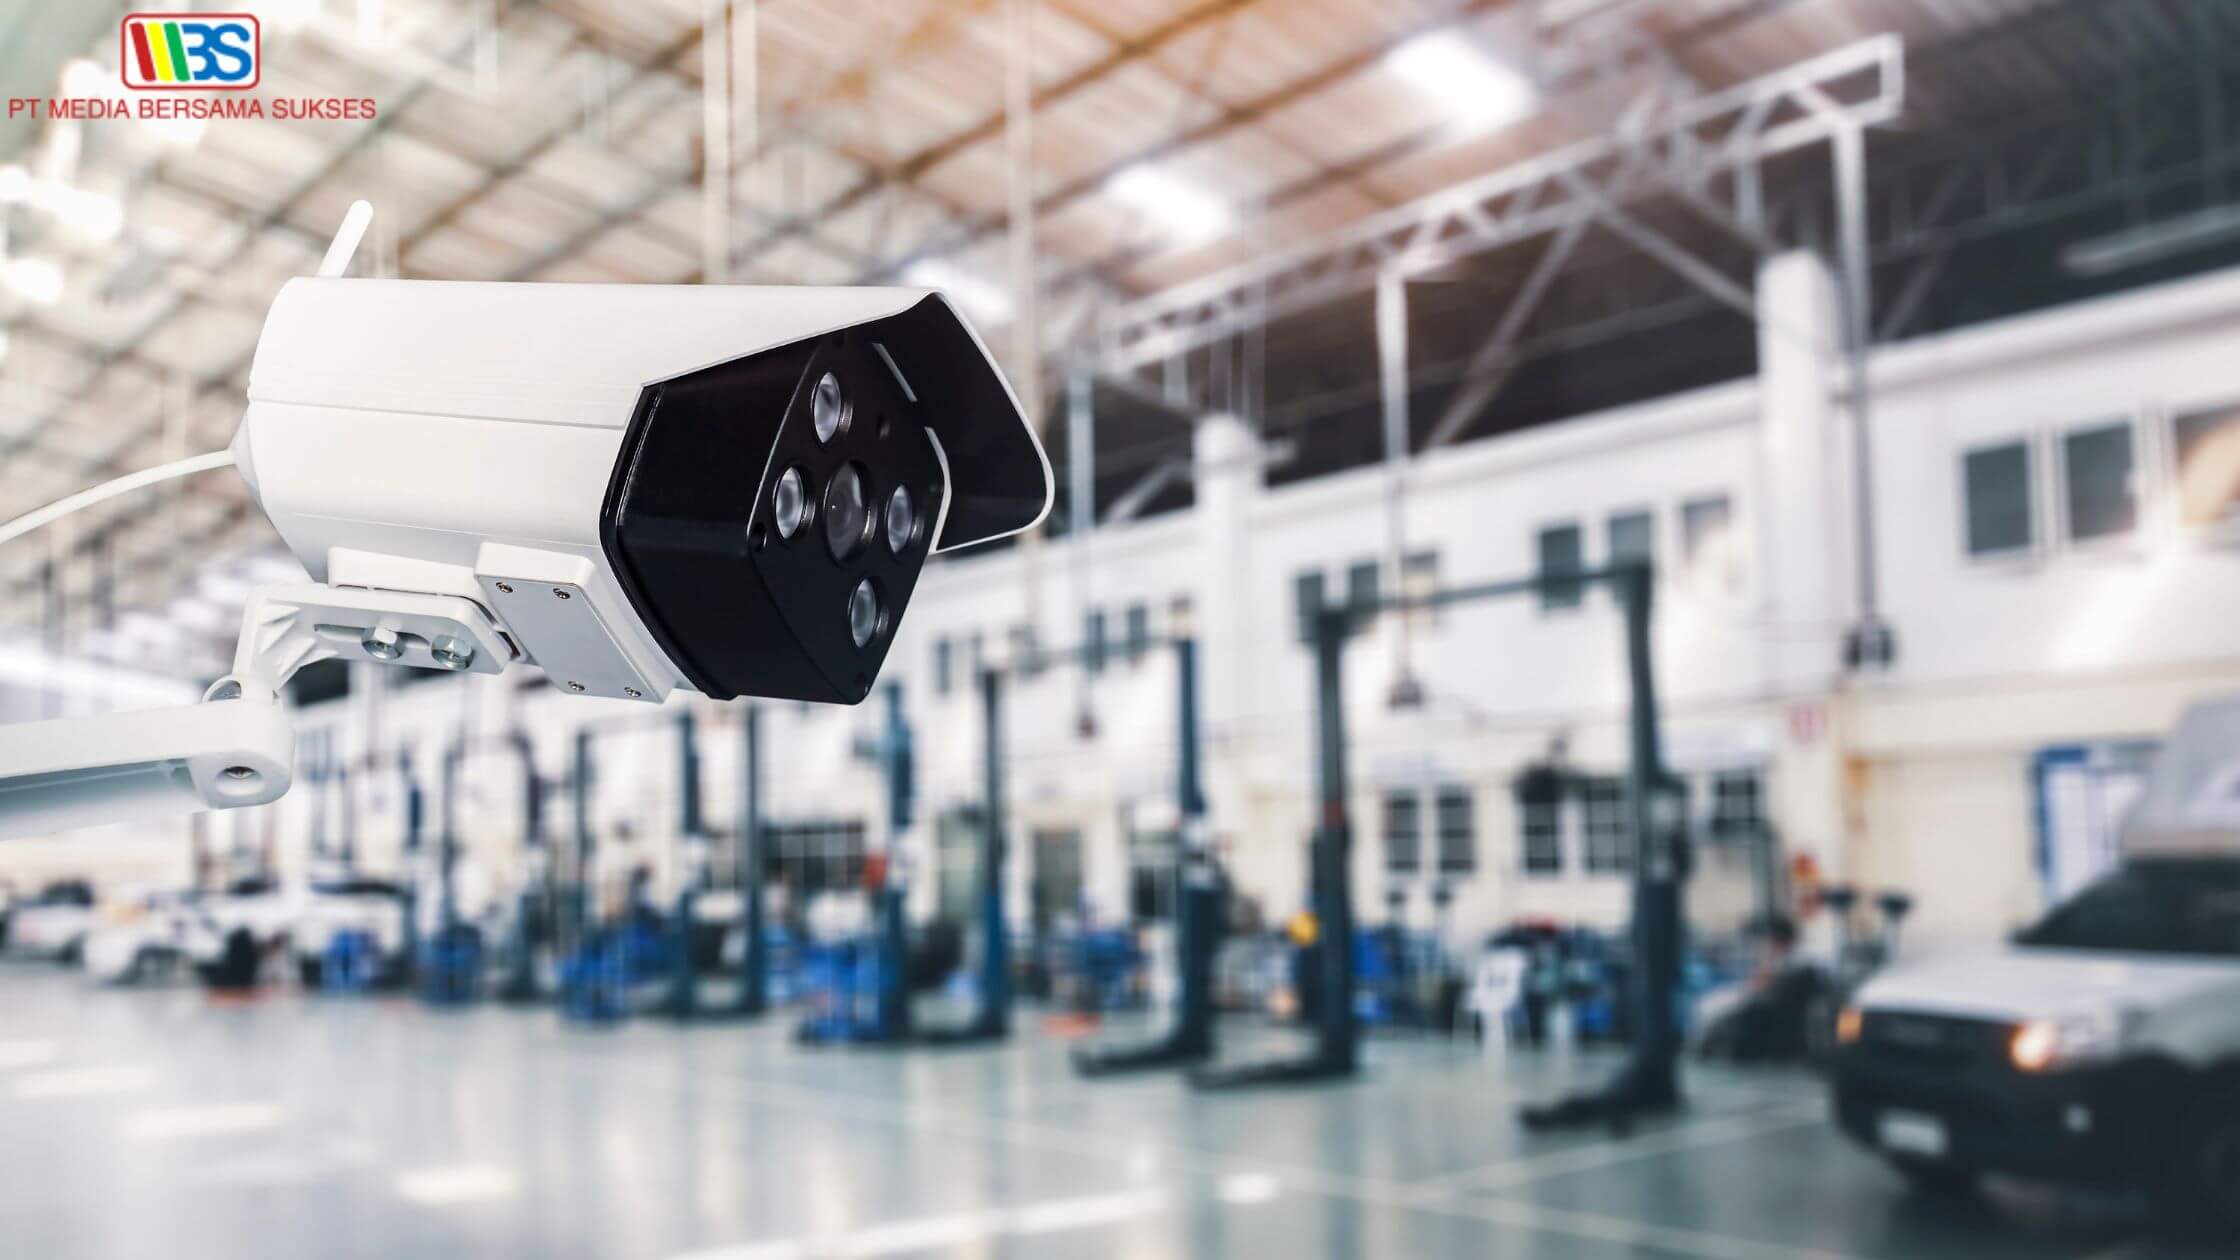 Manfaat Kamera CCTV Pabrik dan Tips Memilihnya untuk Area Pabrik